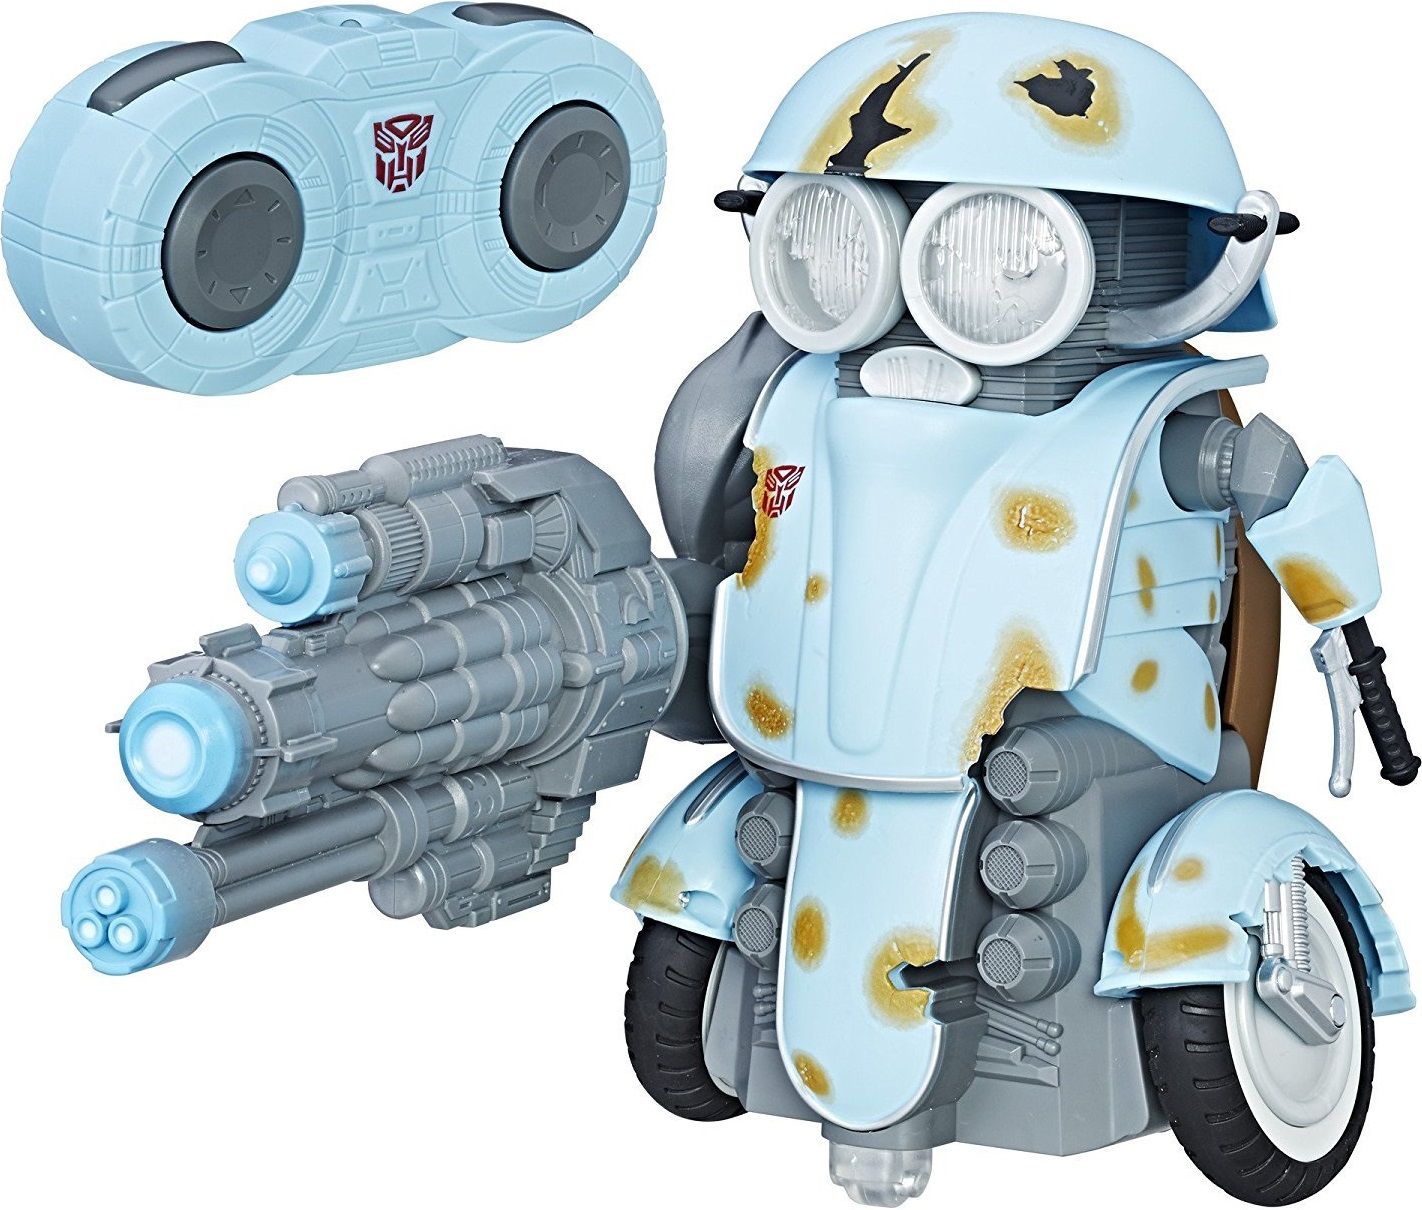 

Робот "Transformers - Autobot Sqweeks" (Трансформеры. Автобот - Сквикс)